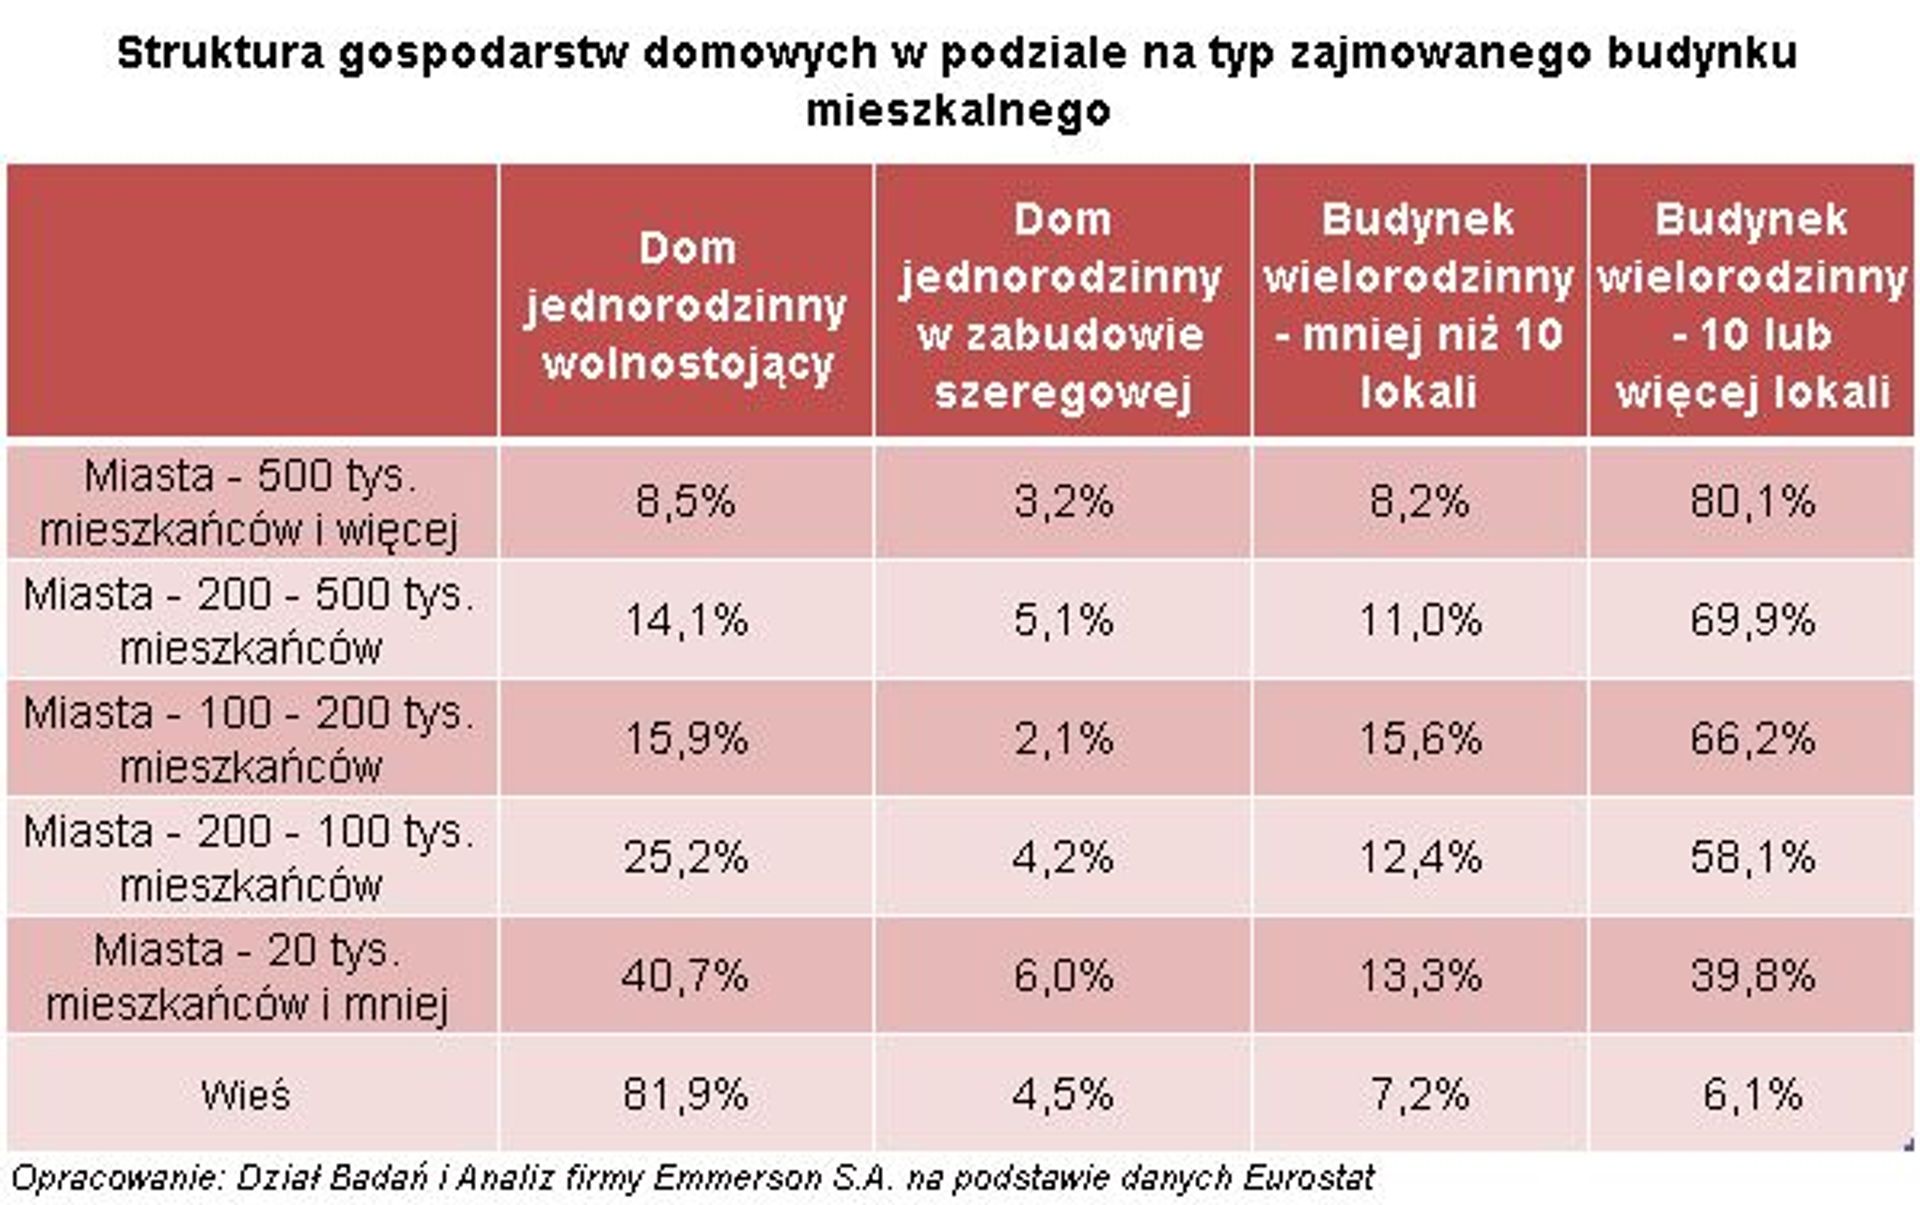  Więcej Polaków mieszka w mieszkaniach czy w domach?